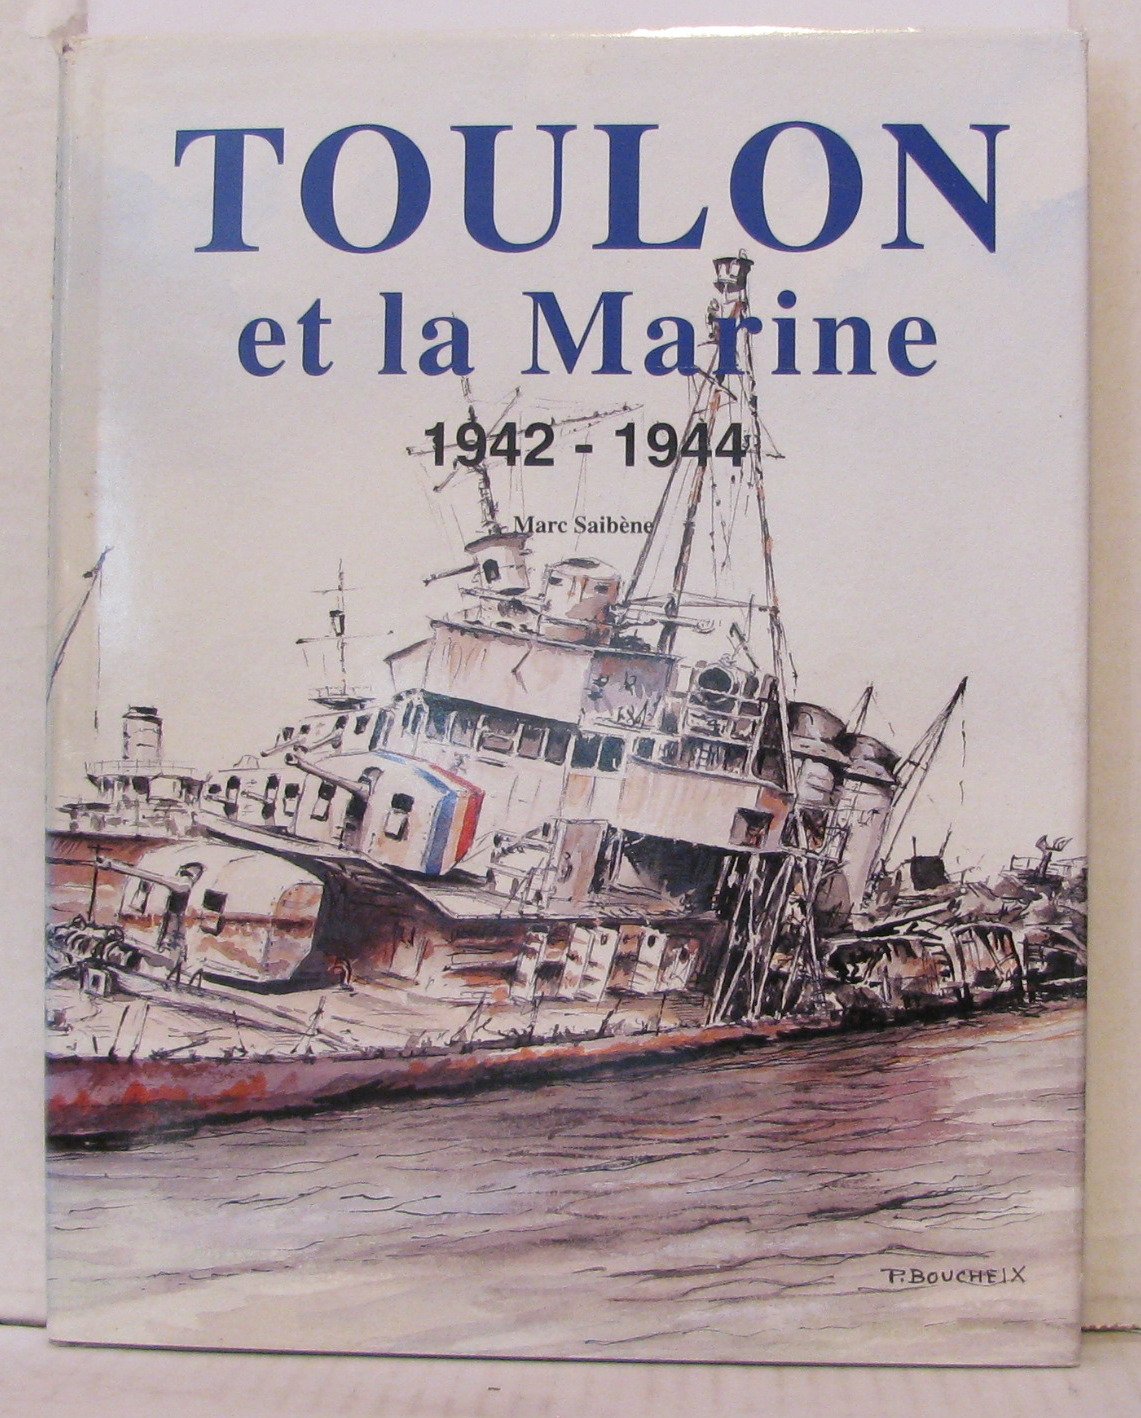 Toulon et la Marine 1942-1944.